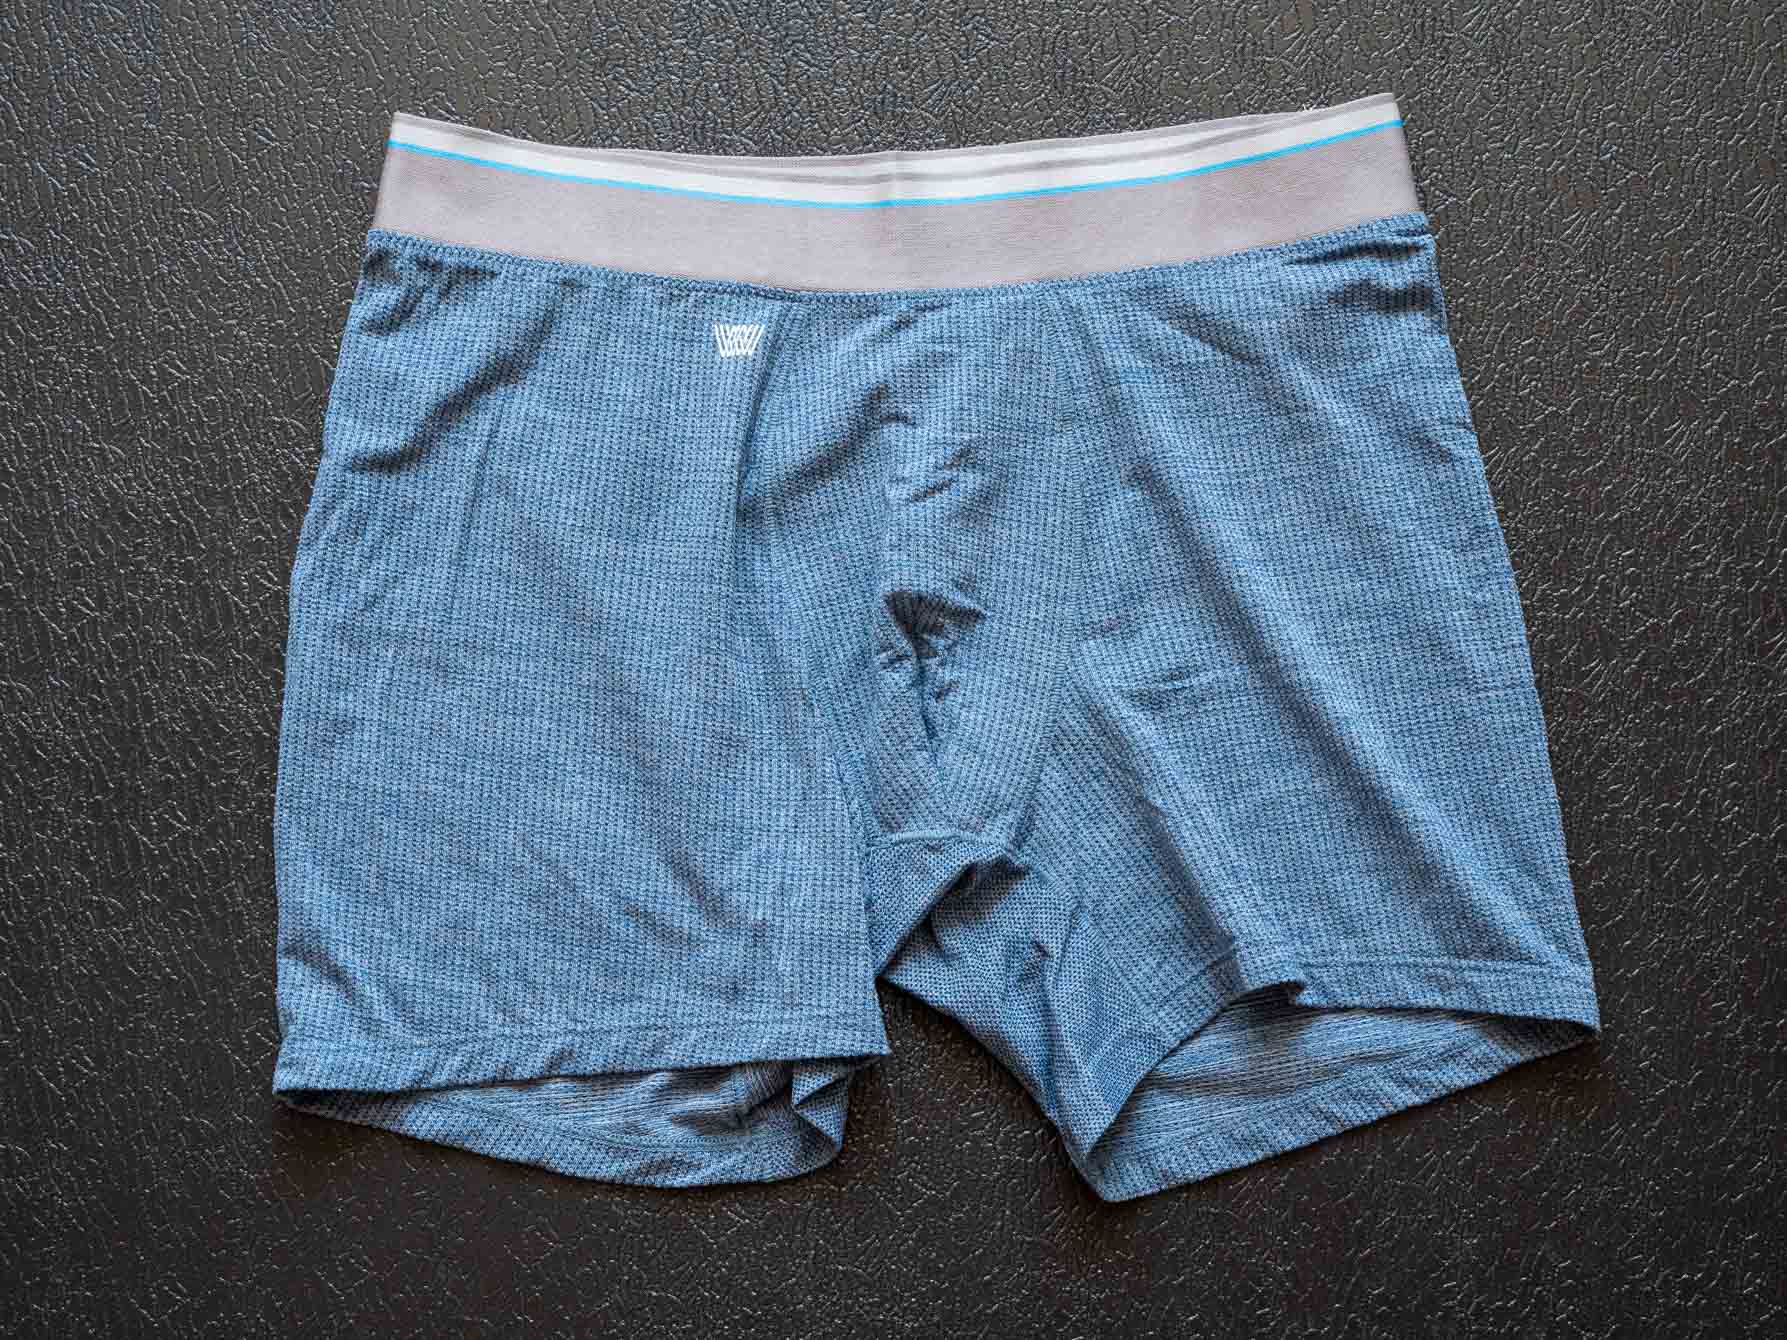 Mack Weldon Underwear Direct to Consumer